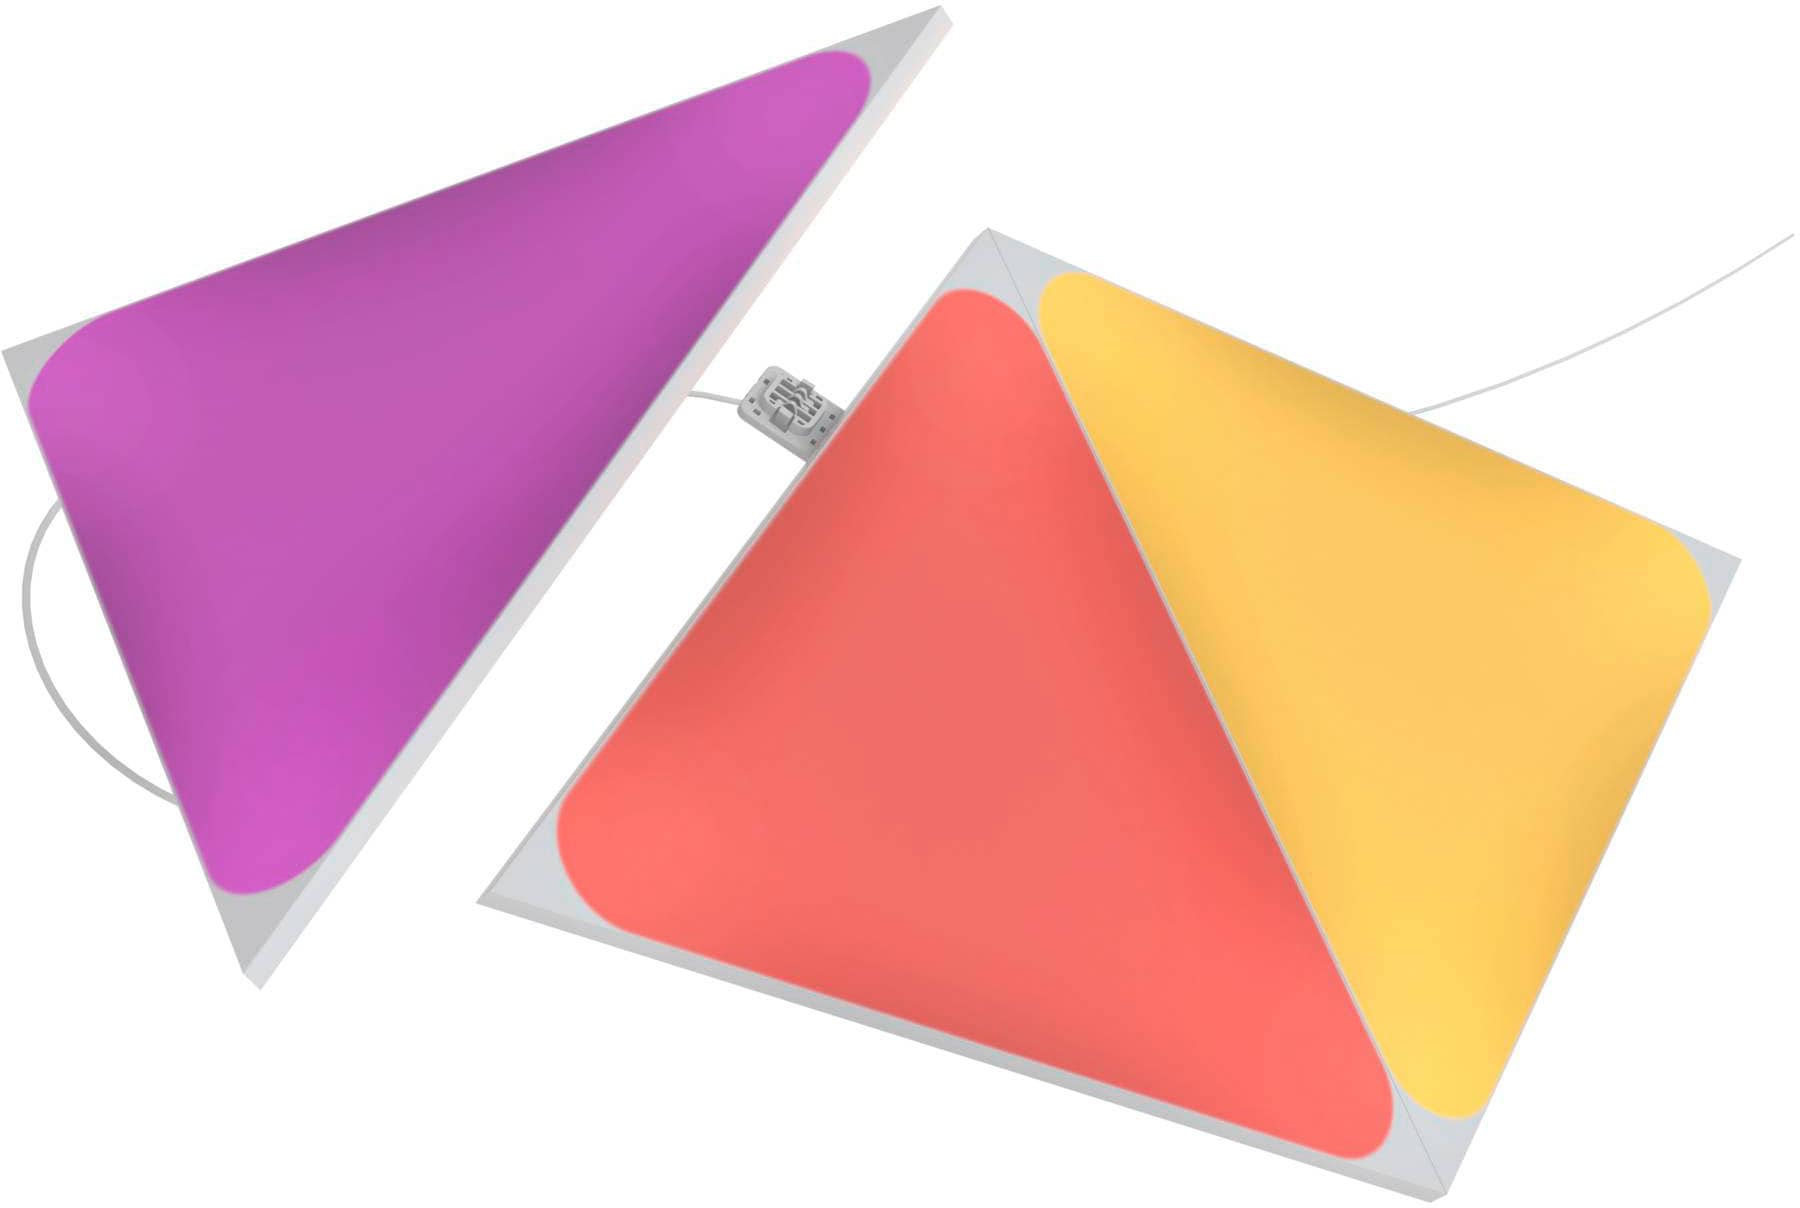 | LED BAUR Panel »Triangles« nanoleaf